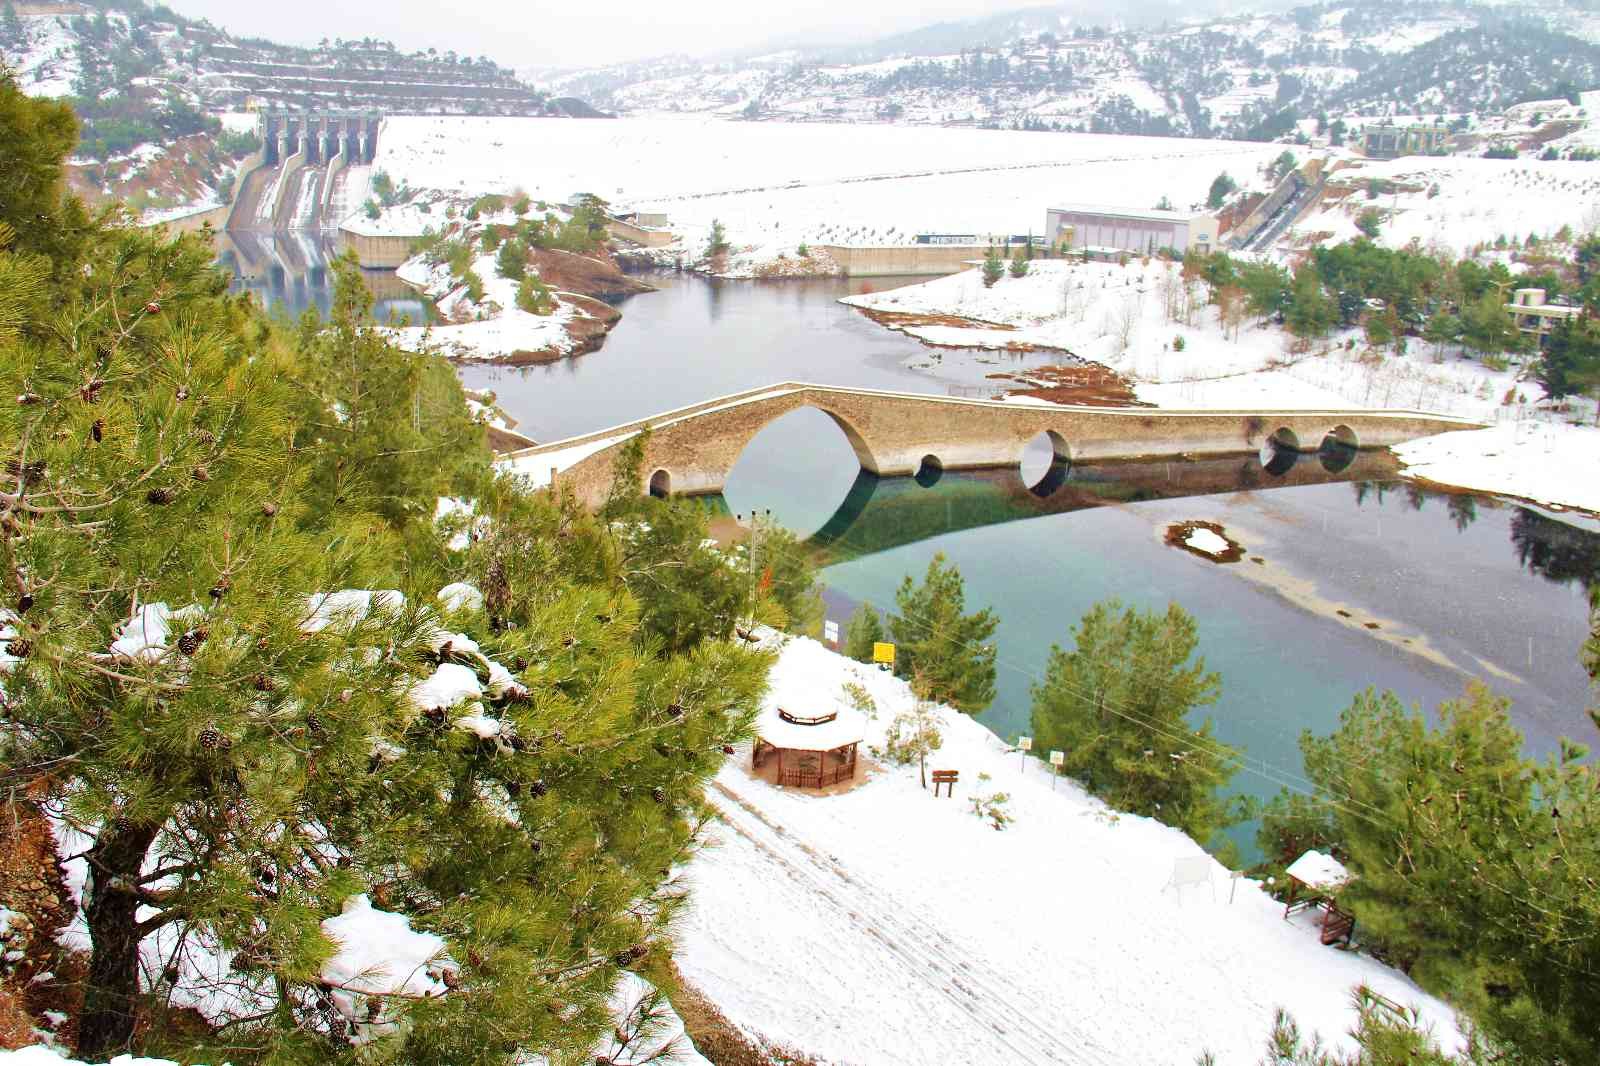 Tarihi Ceyhan Köprüsü görsel şölen sundu #kahramanmaras